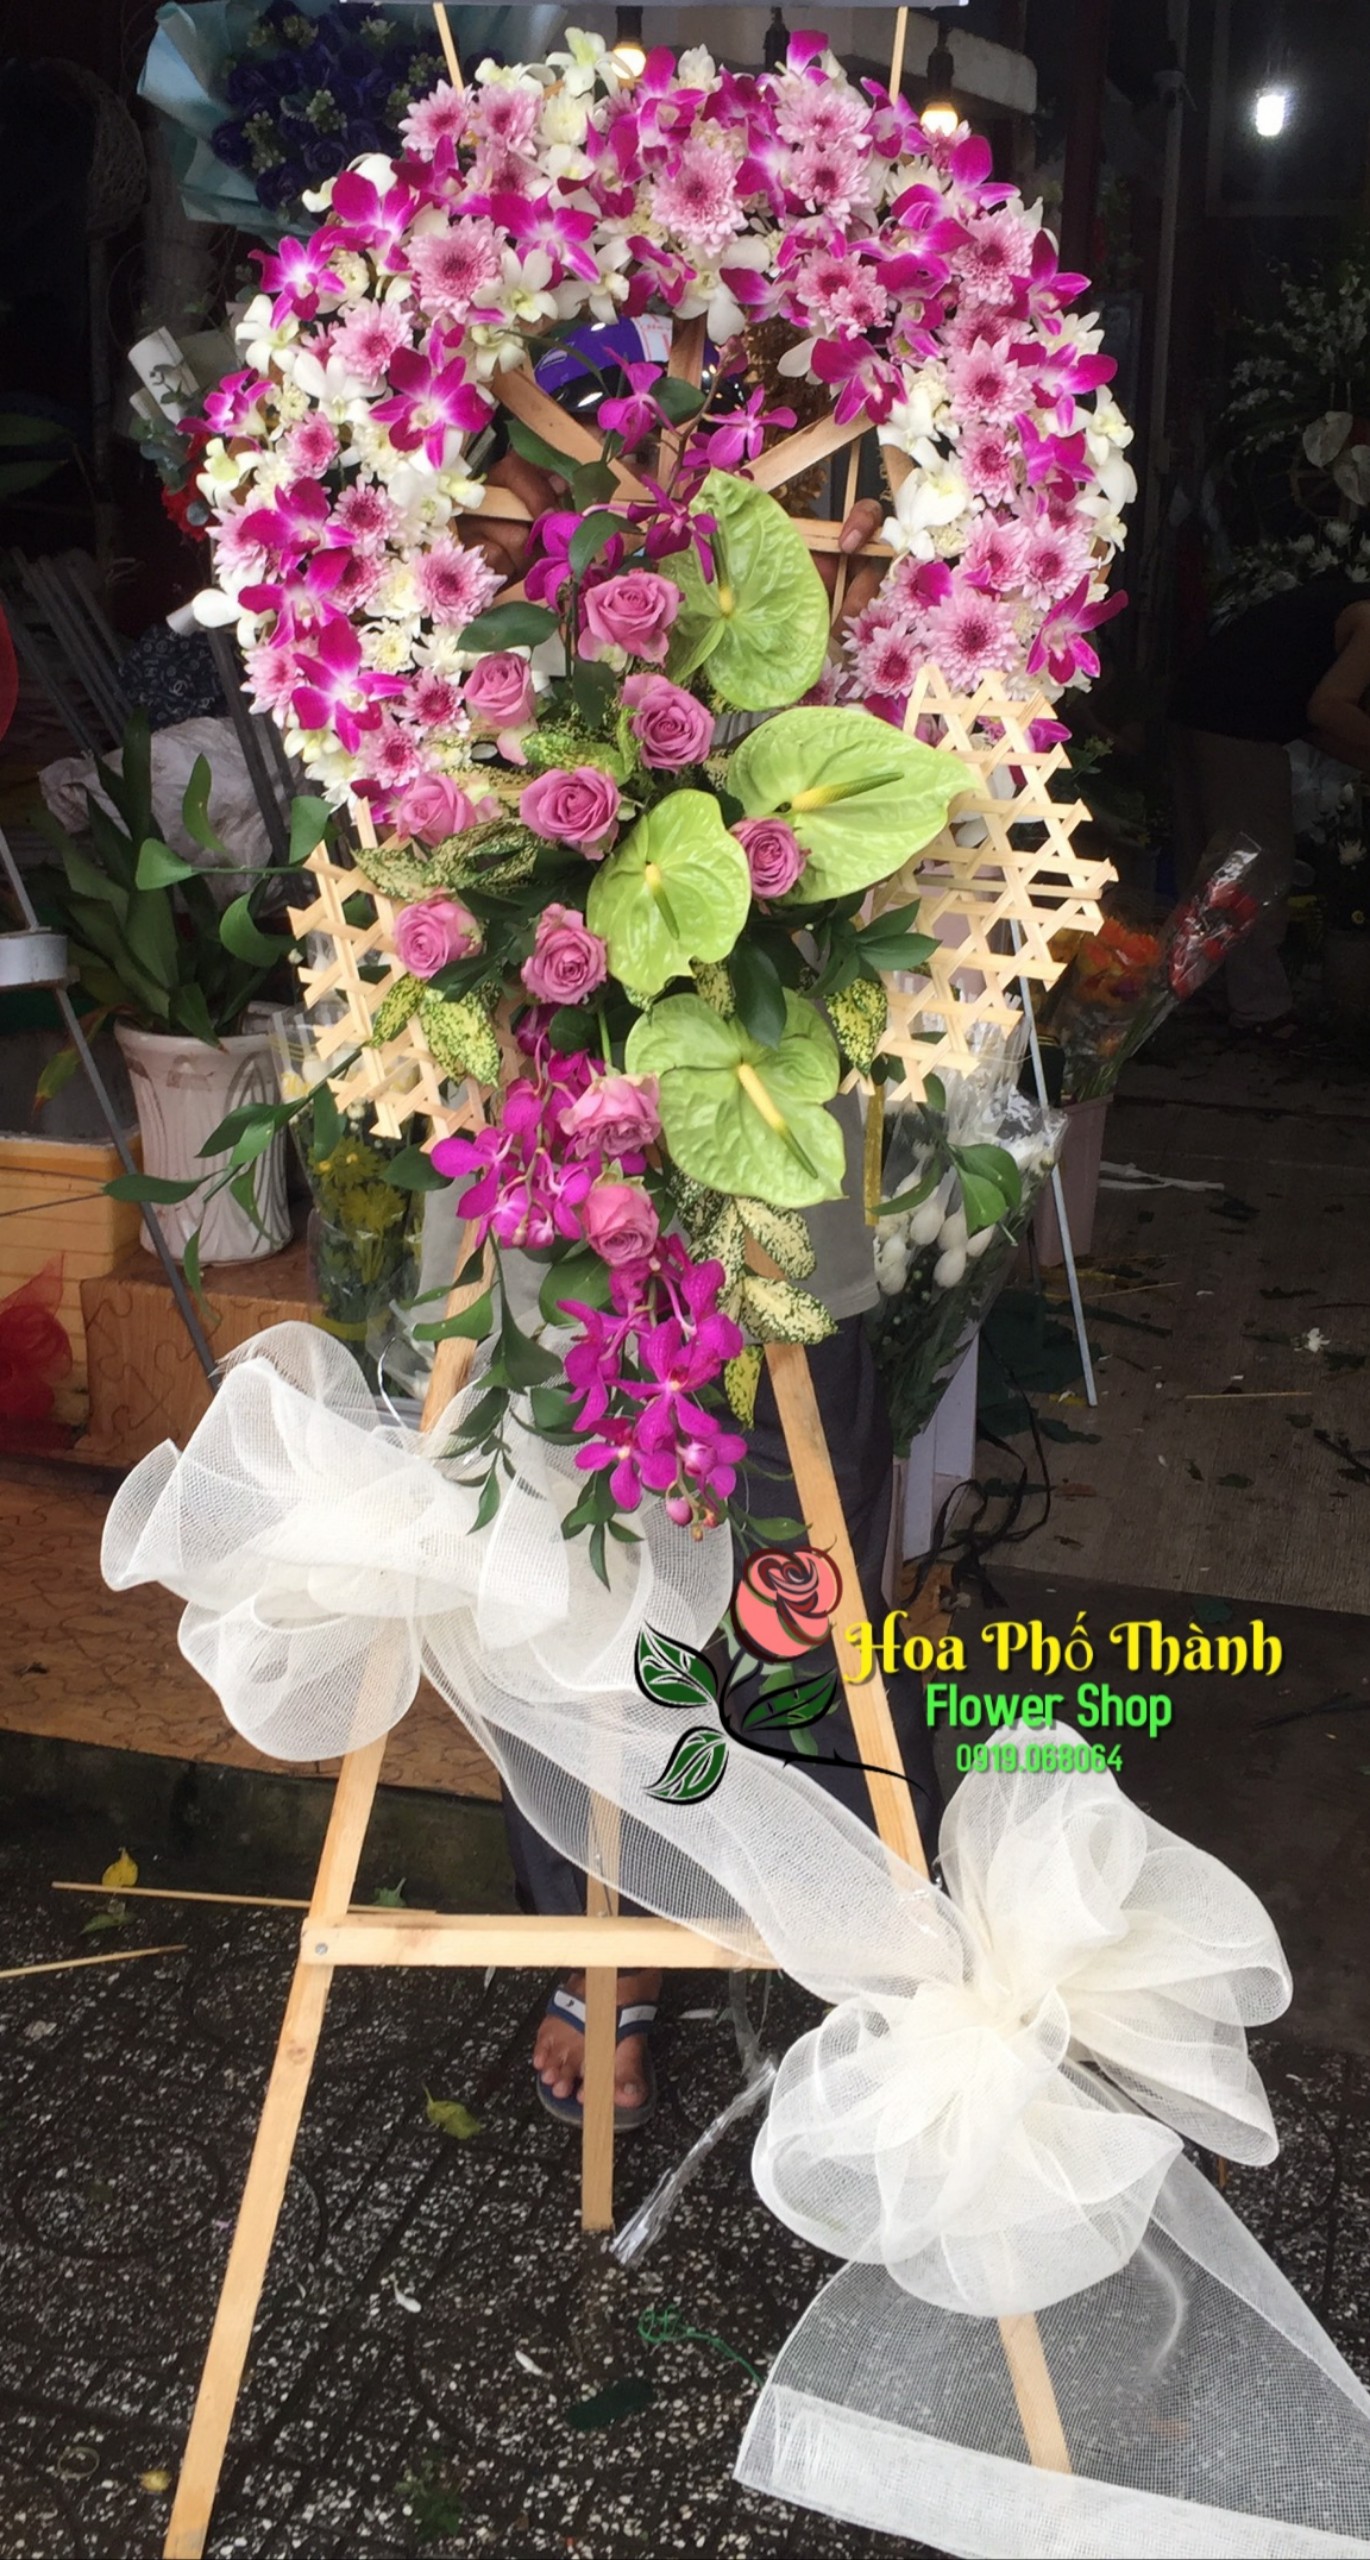 Mẫu hoa viếng đám tang đẹp và sang trọng thay bạn gửi điện hoa chia buồn tại Shop hoa tươi Phố Thành Rạch Giá Kiên Giang